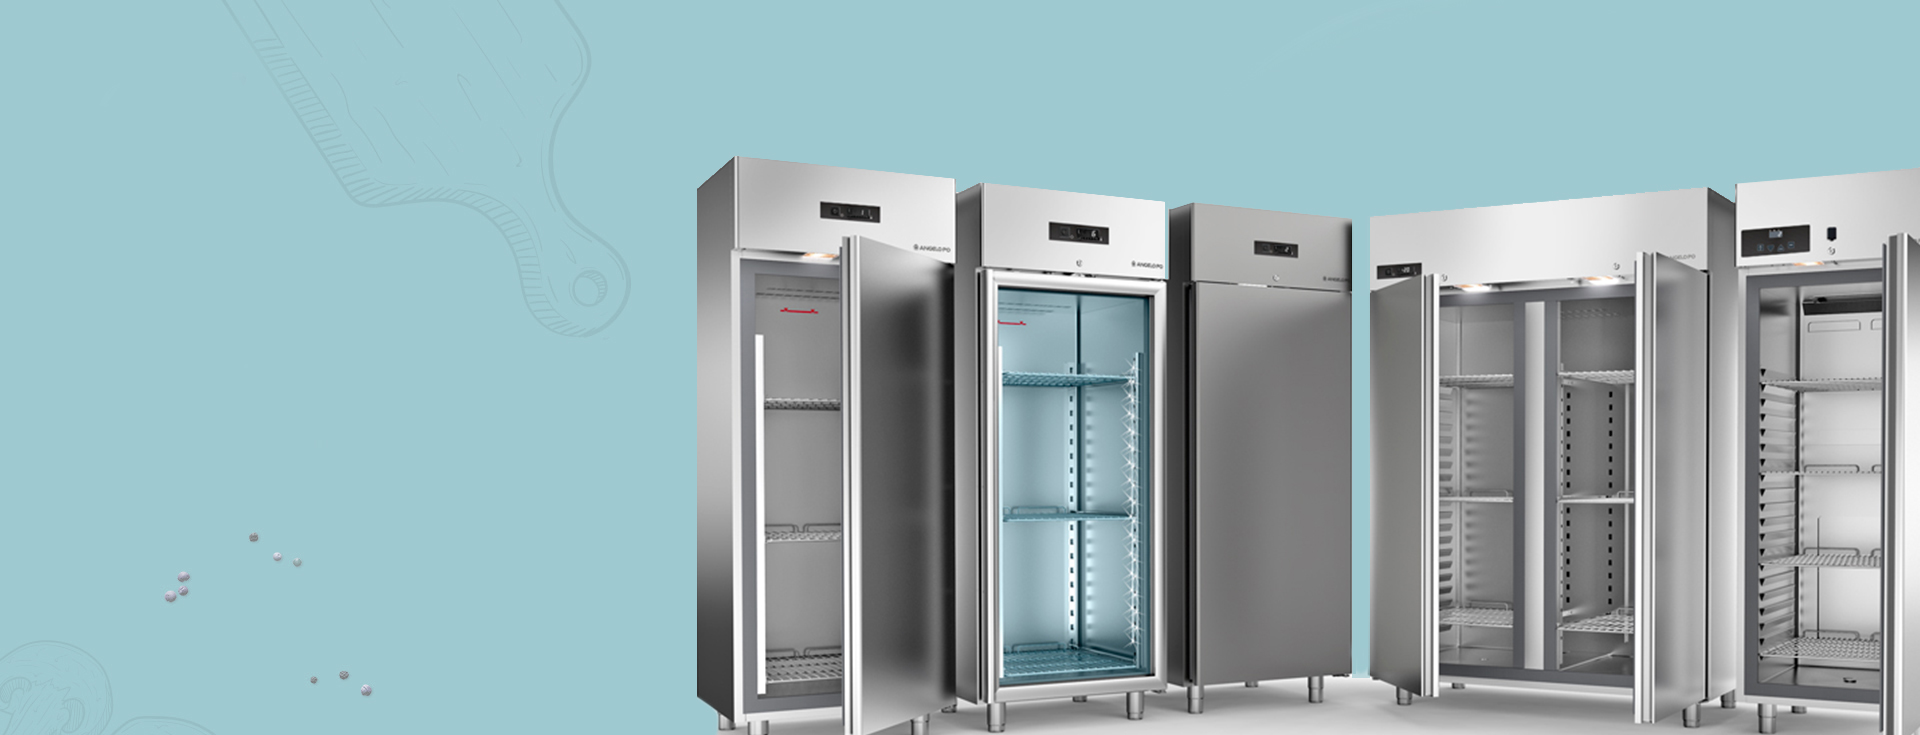 Armadi frigoriferi professionali, basi refrigerate e abbattitori | CRV Sistemi a Nanto Vicenza